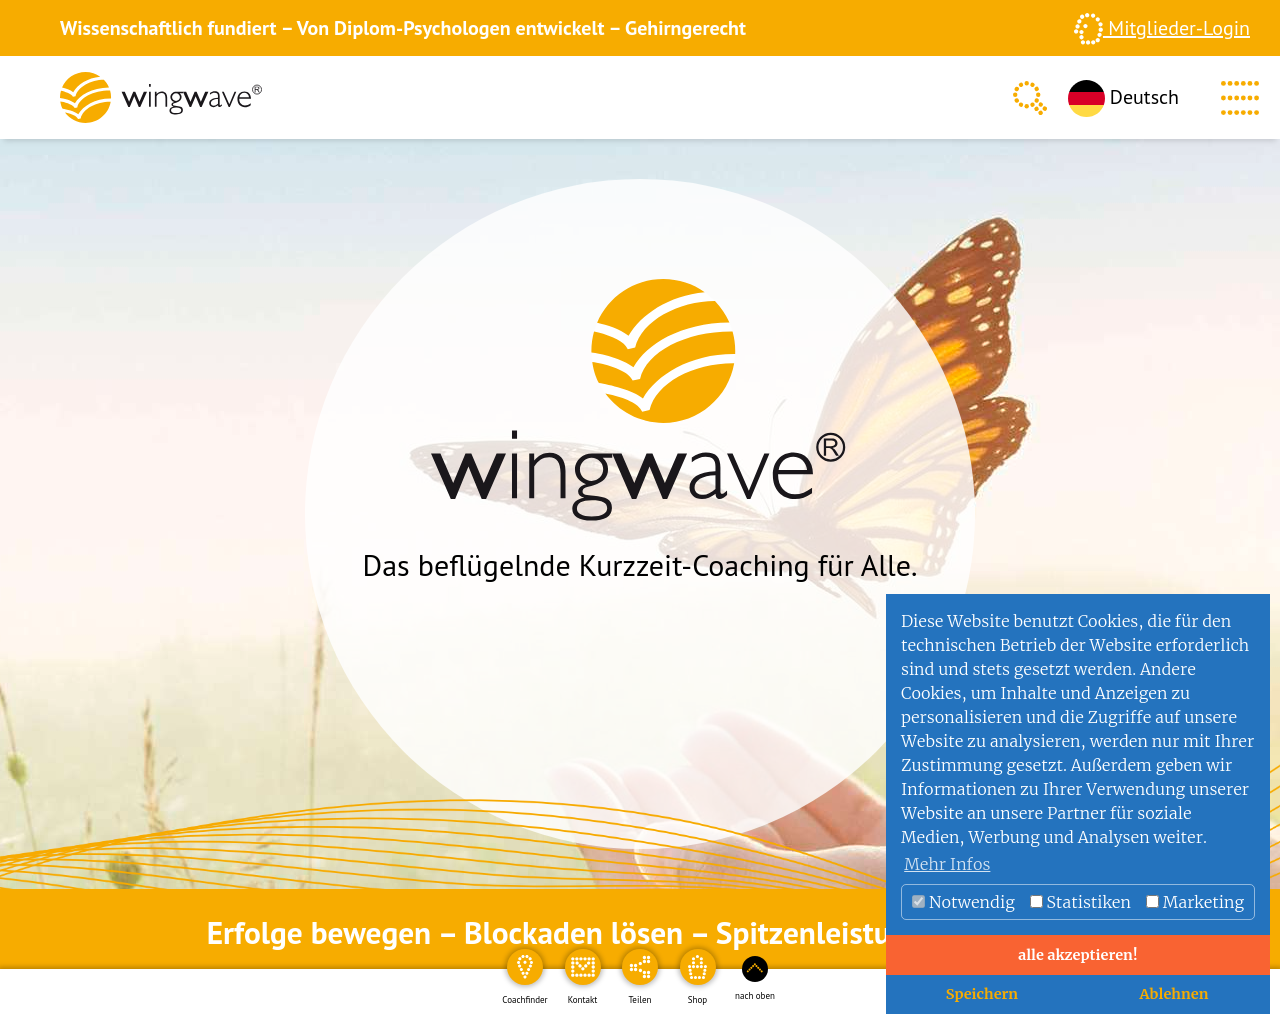 wingwave.com